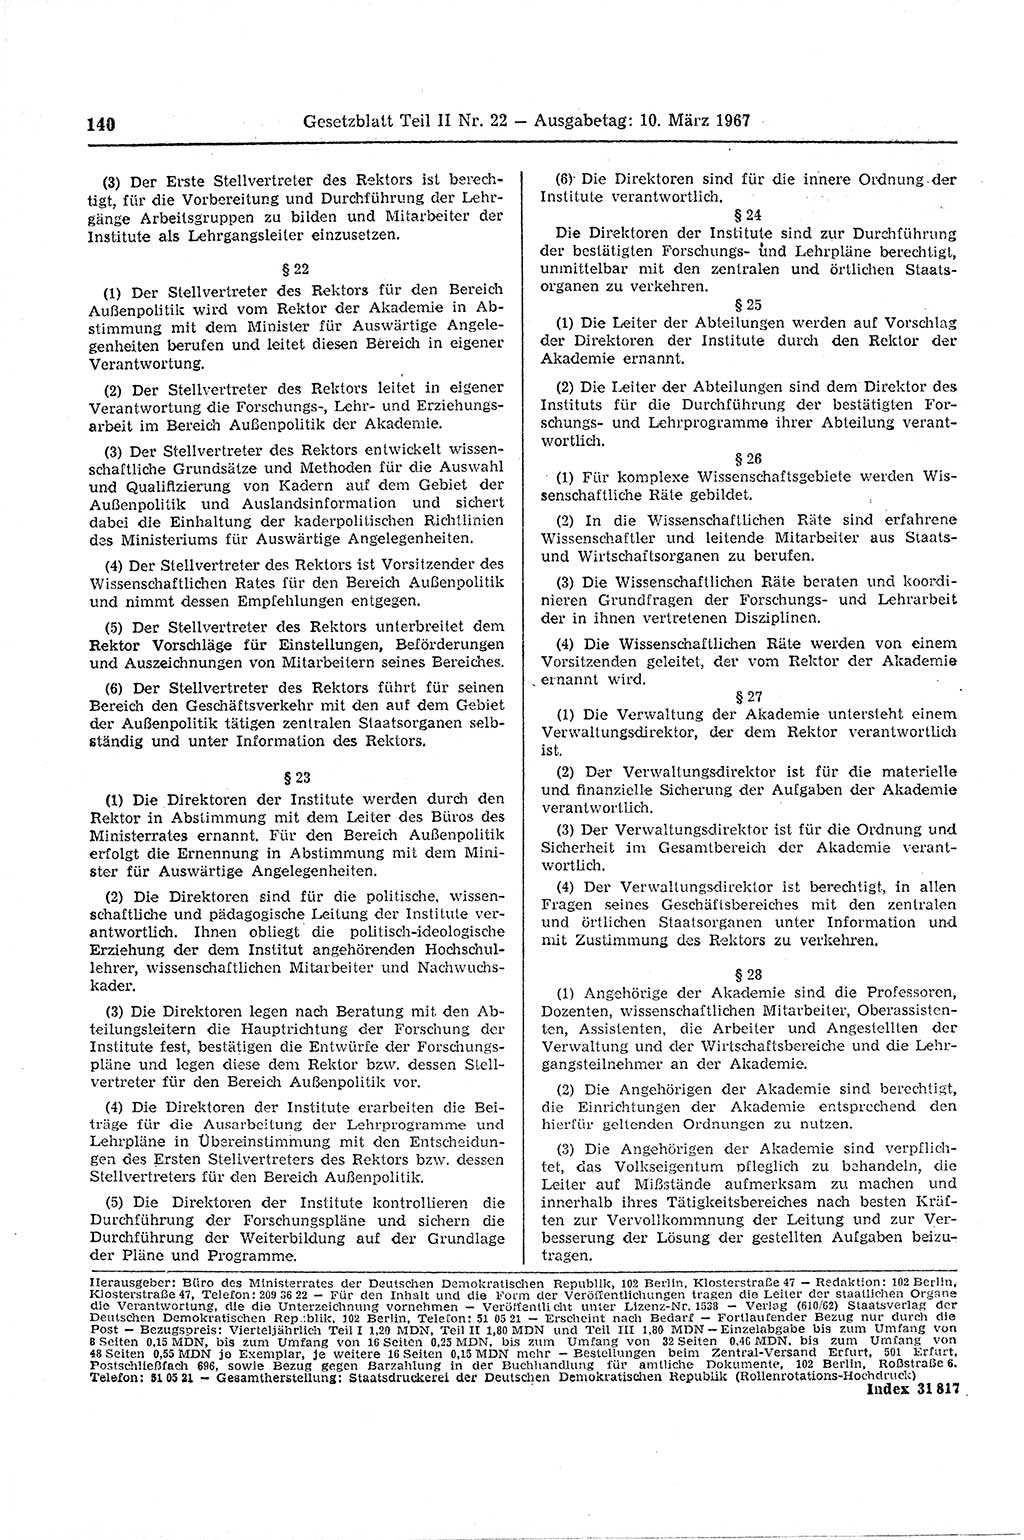 Gesetzblatt (GBl.) der Deutschen Demokratischen Republik (DDR) Teil ⅠⅠ 1967, Seite 140 (GBl. DDR ⅠⅠ 1967, S. 140)